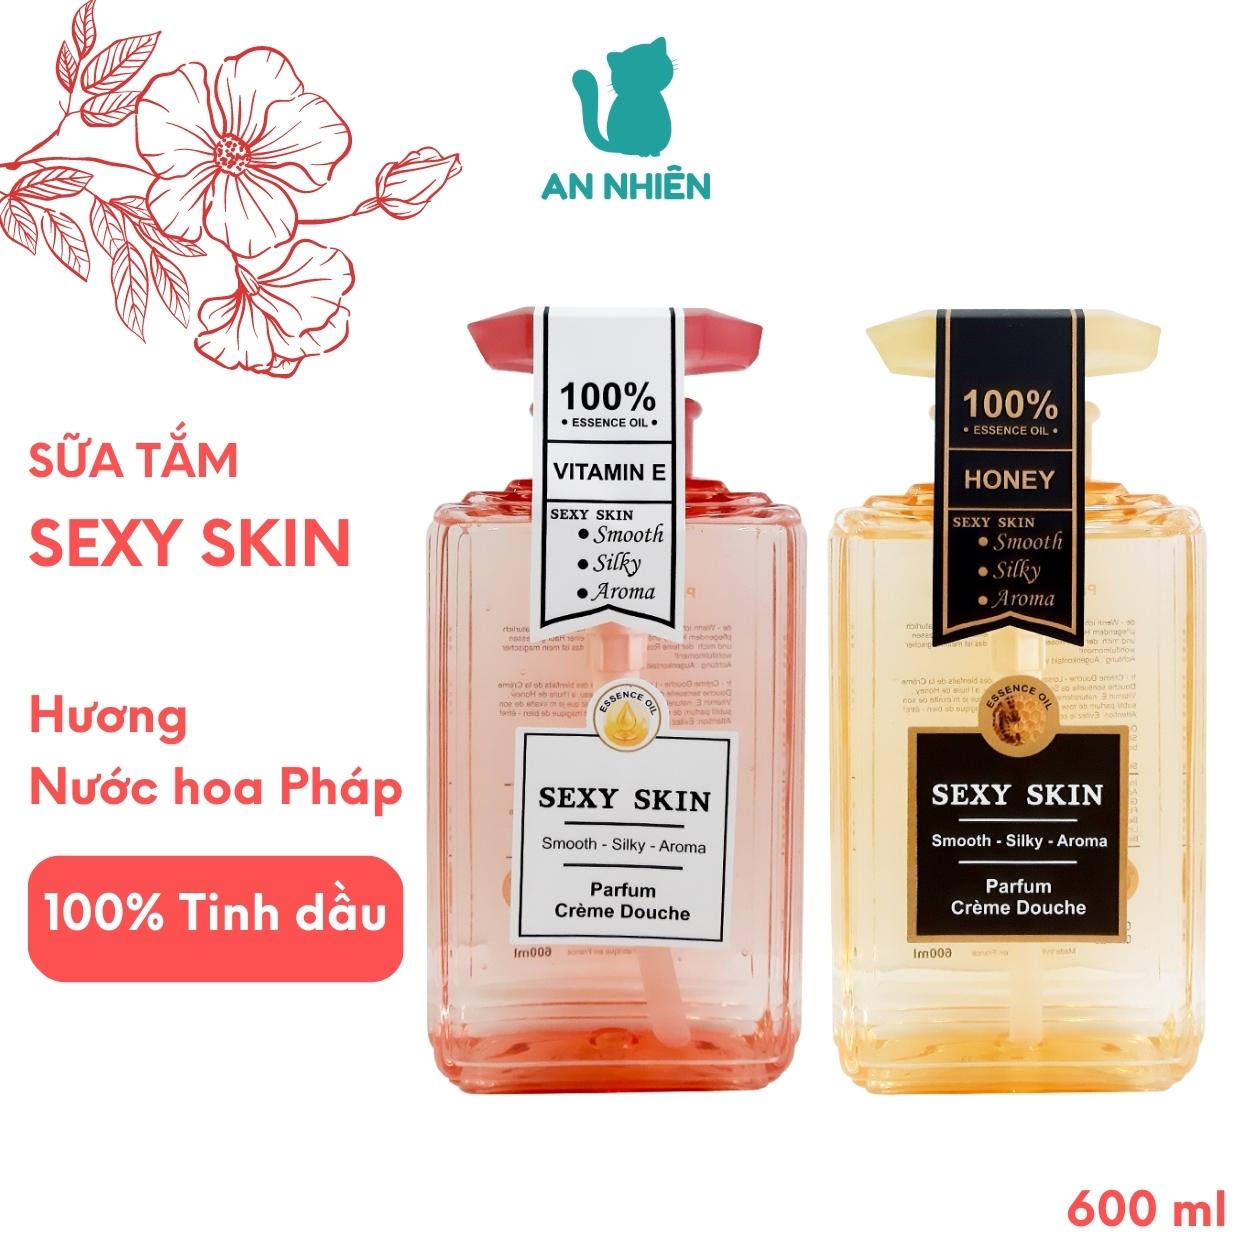 Sữa tắm nước hoa Pháp Sexy Skin 600ml